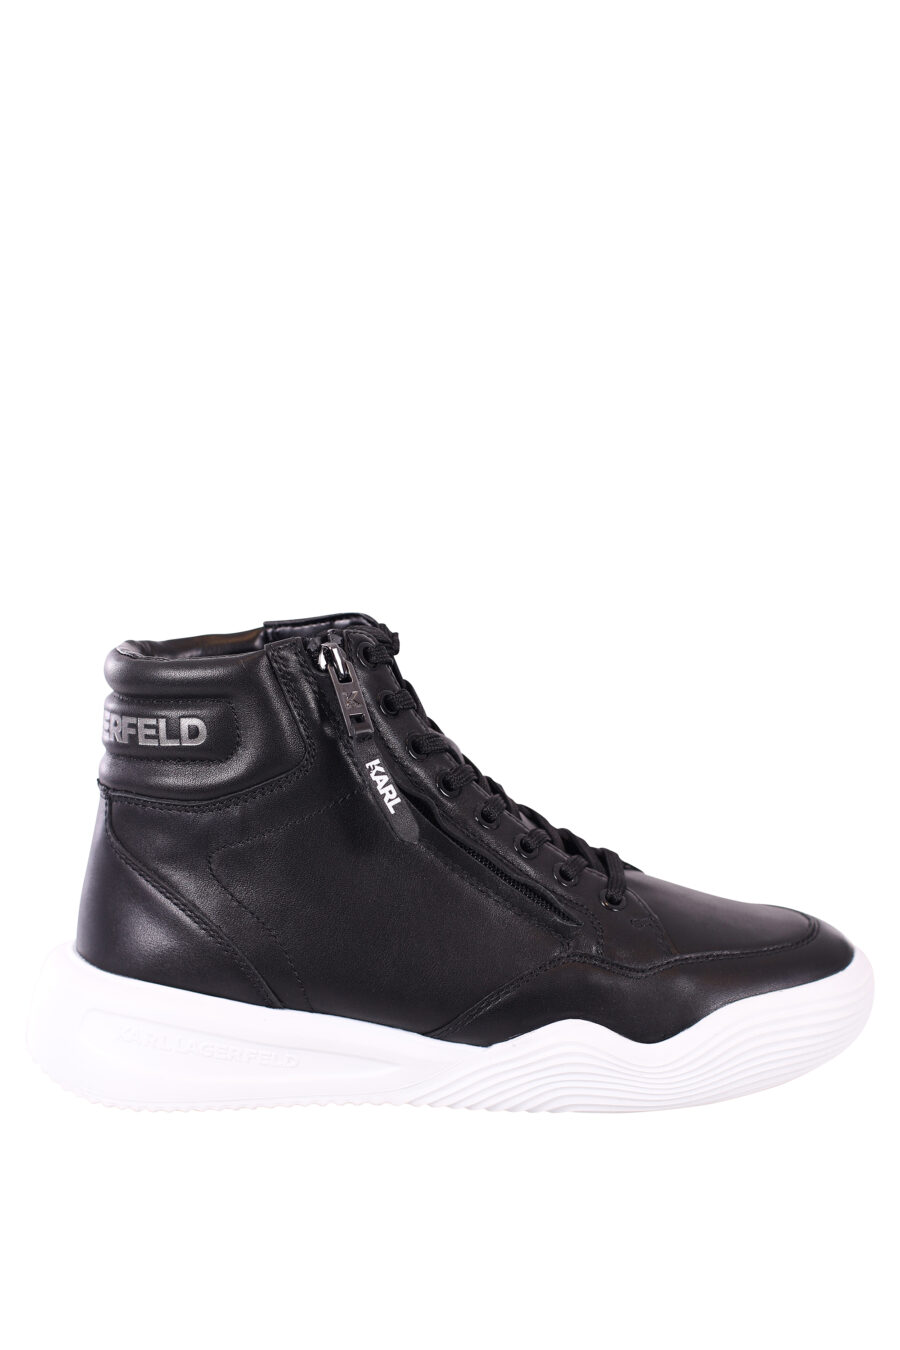 Zapatillas altas negras con suela blanca y cordones - IMG 5722